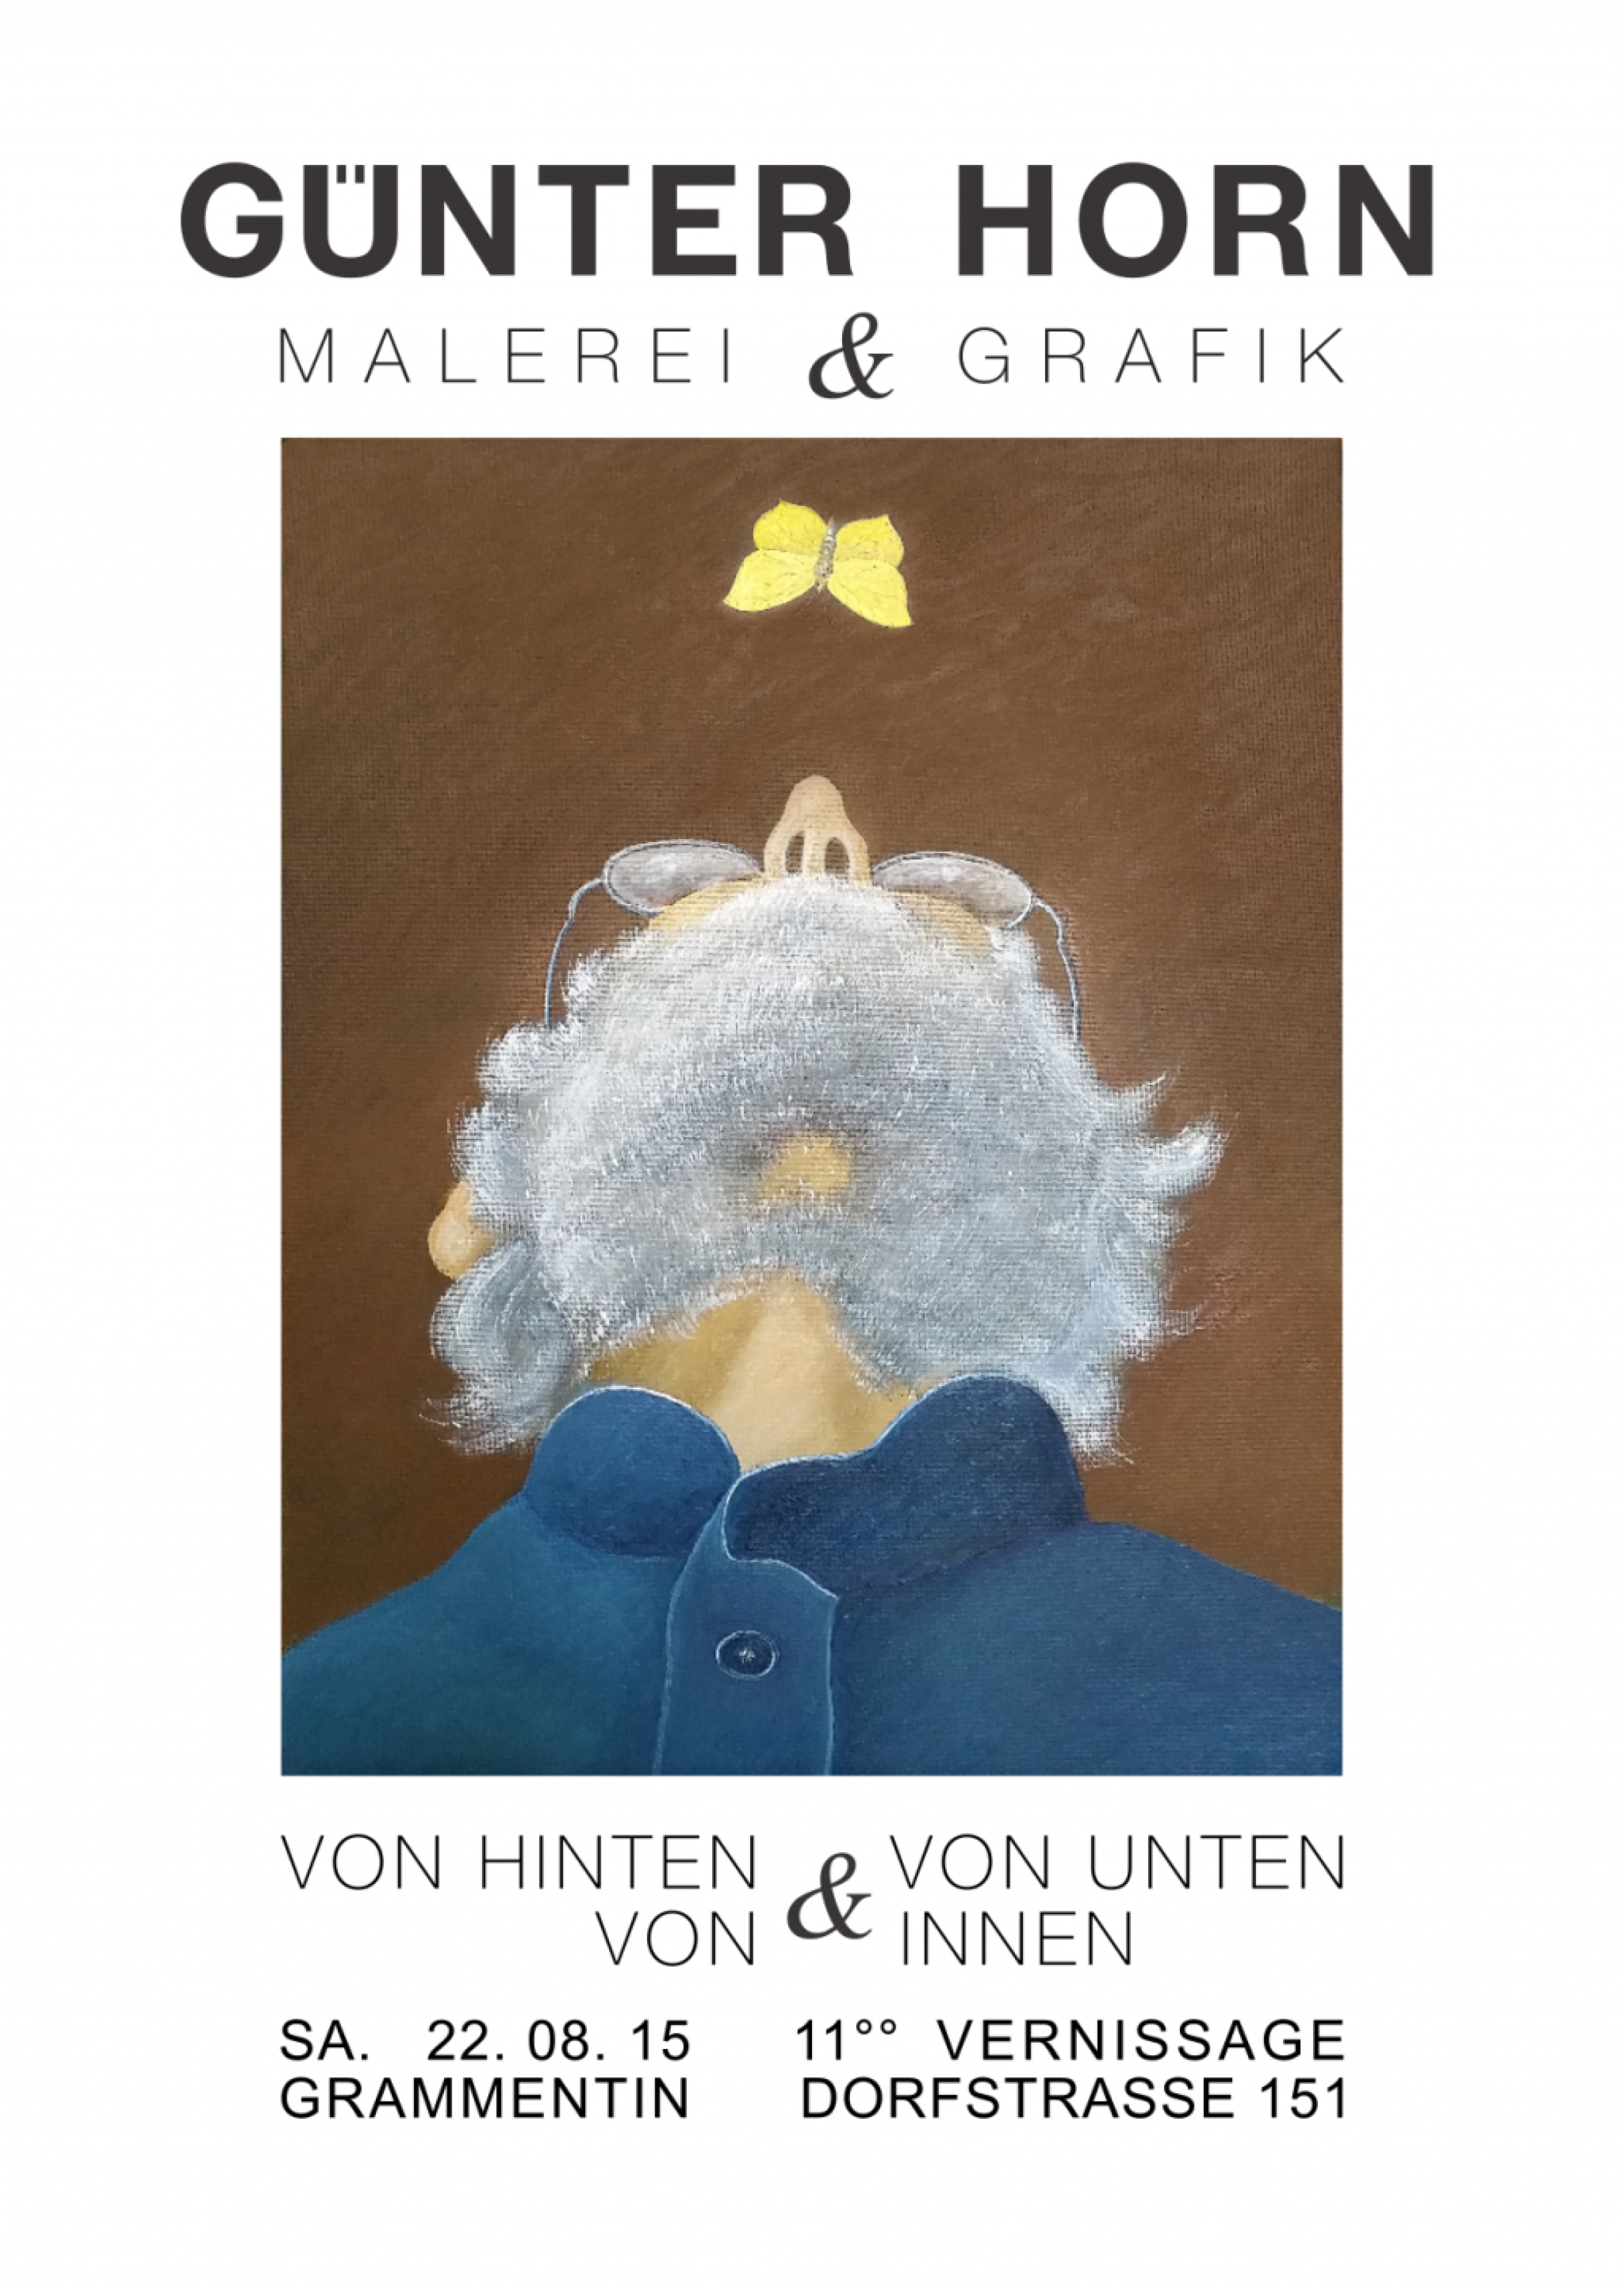 Abbildung von Vernissage Günter Horn 2015 zum 80. Geburtstag Poster